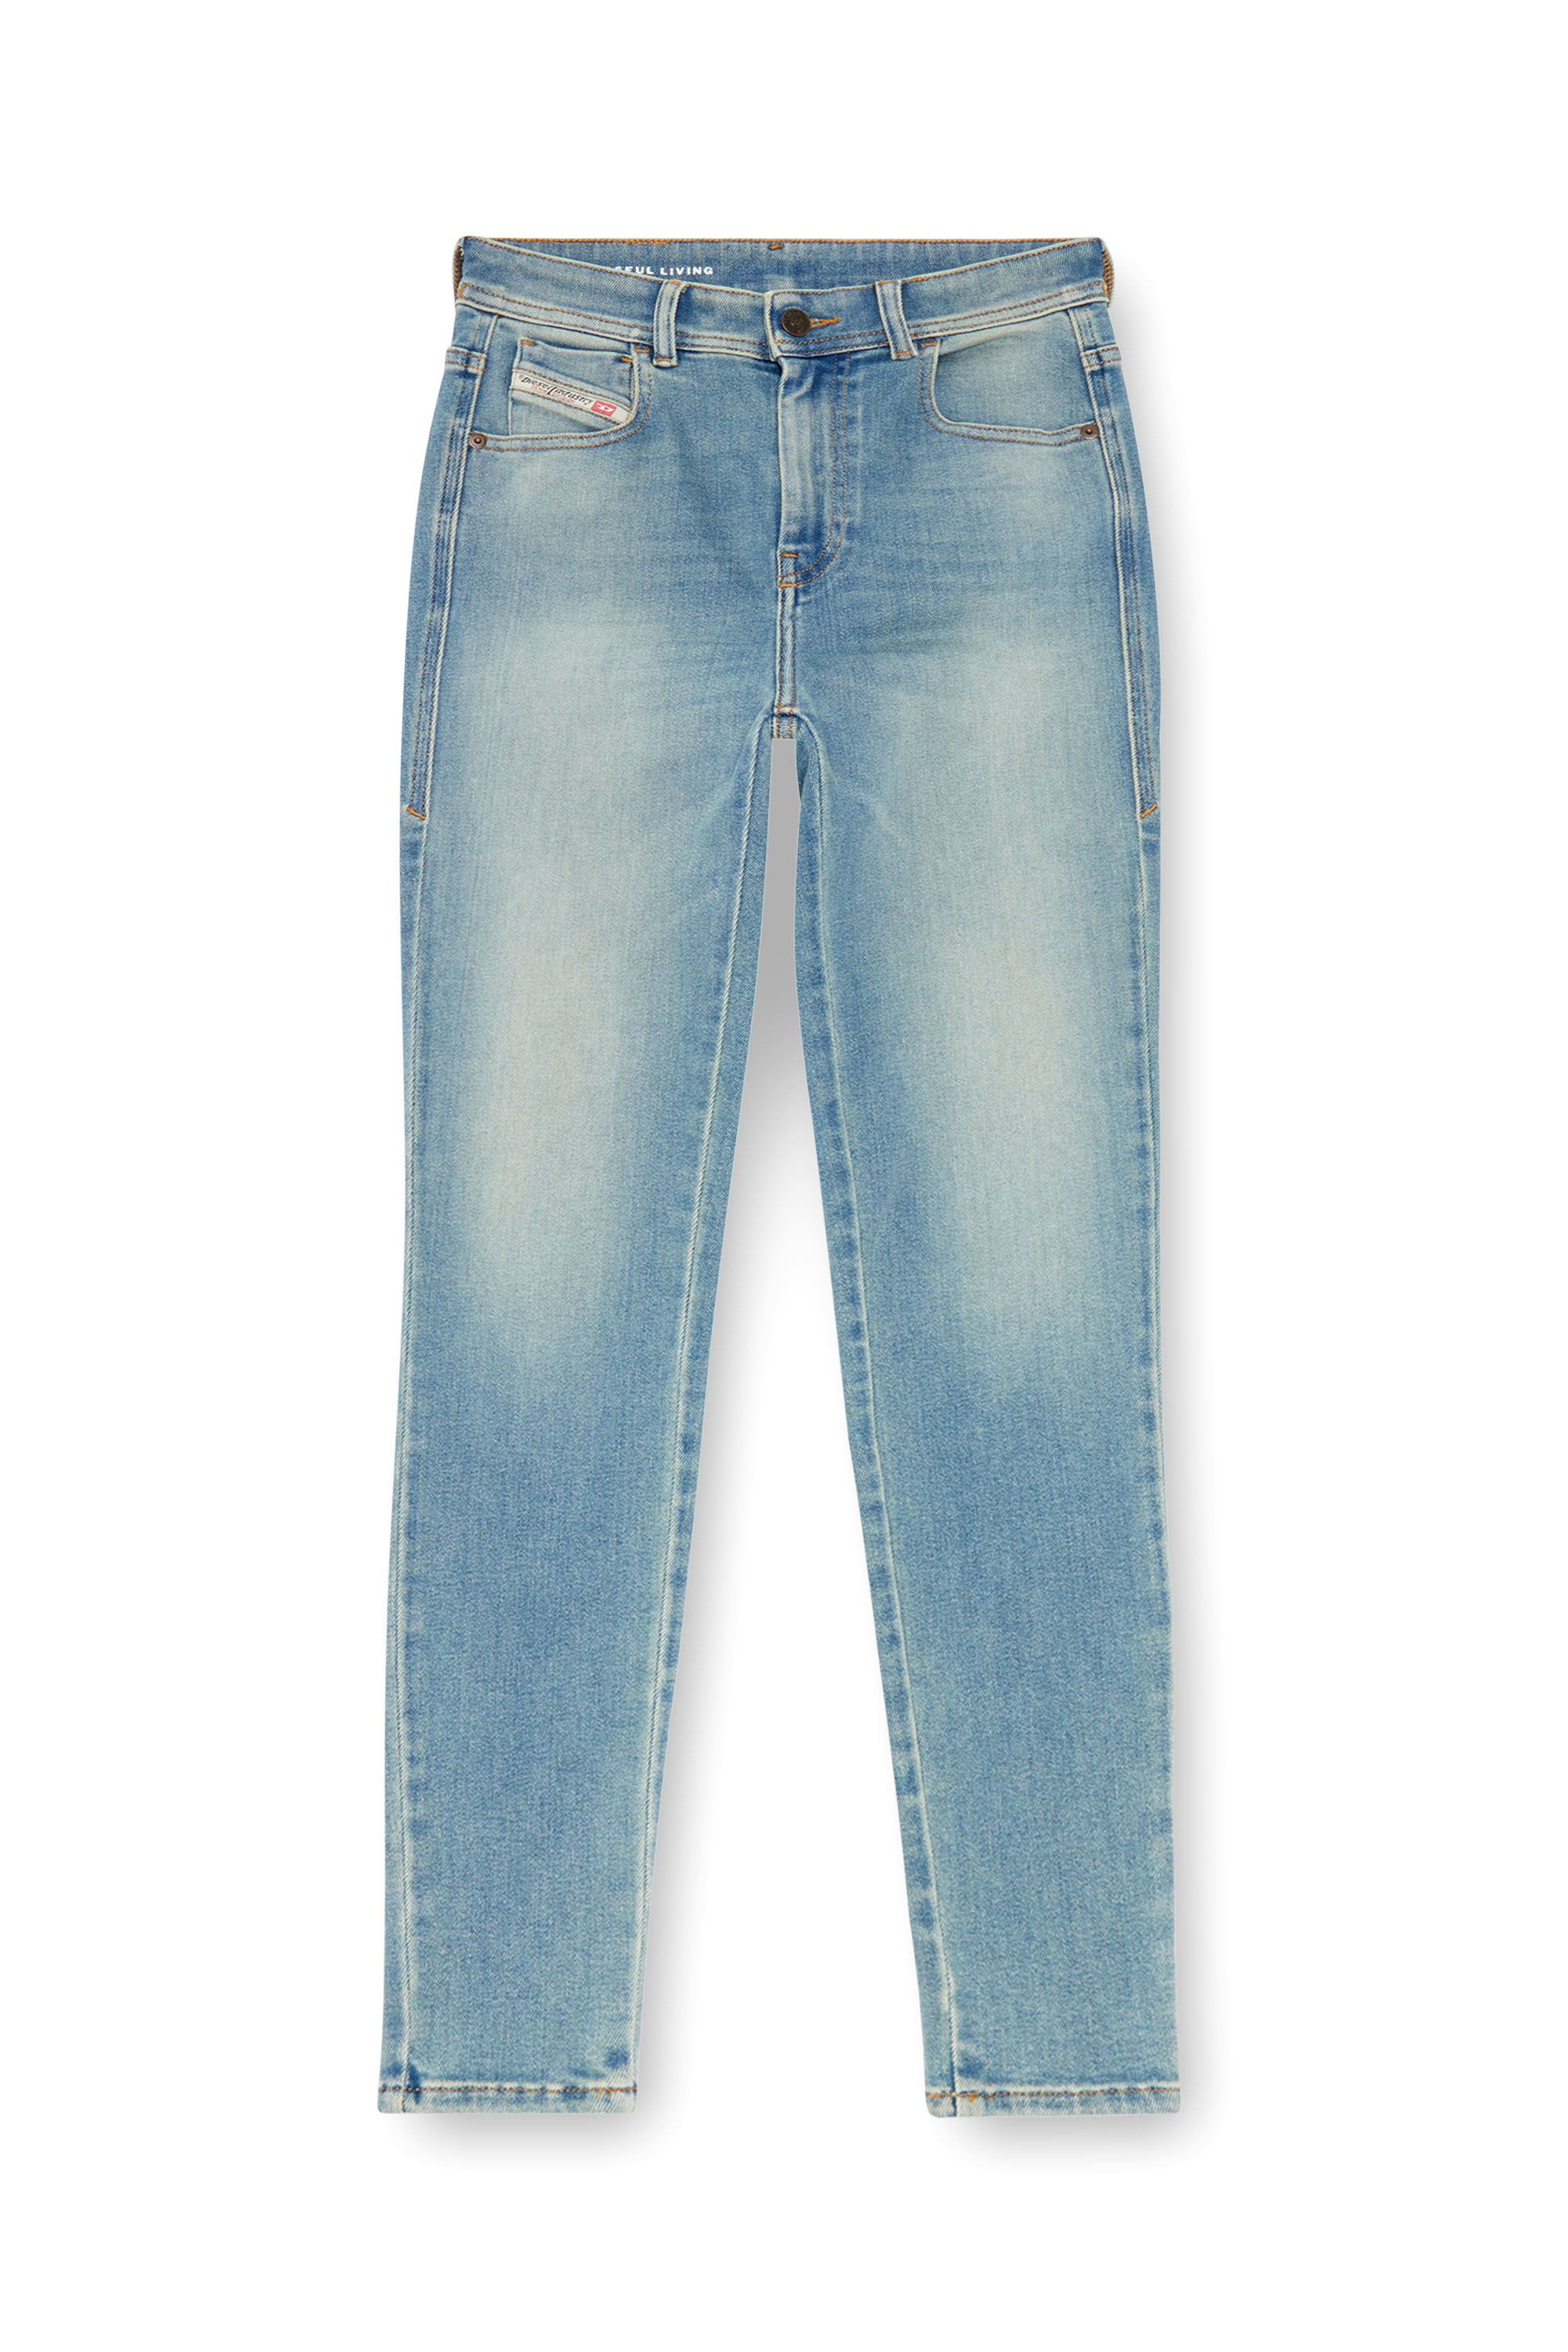 Diesel - Super skinny Jeans 1984 Slandy-High 09J09, Mujer Super skinny Jeans - 1984 Slandy-High in Azul marino - Image 3